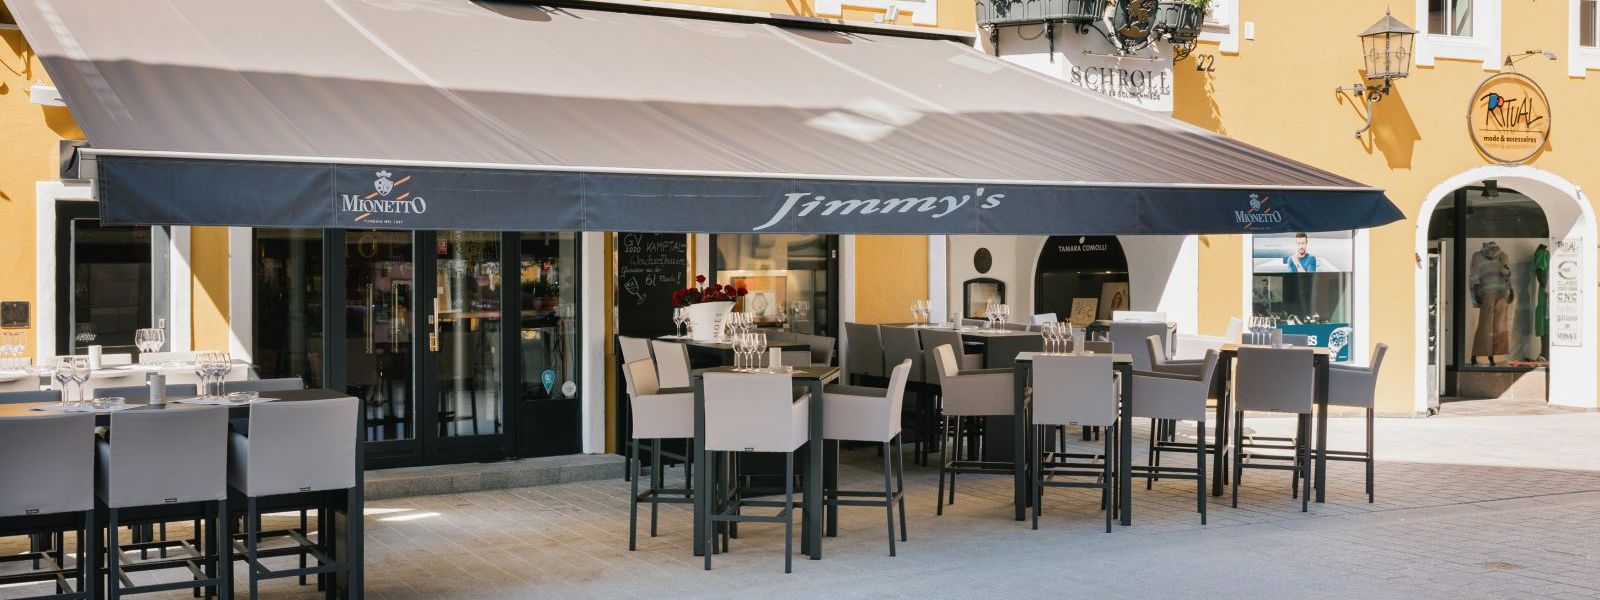 Jimmy’s Dinner & Club in Kitzbühel